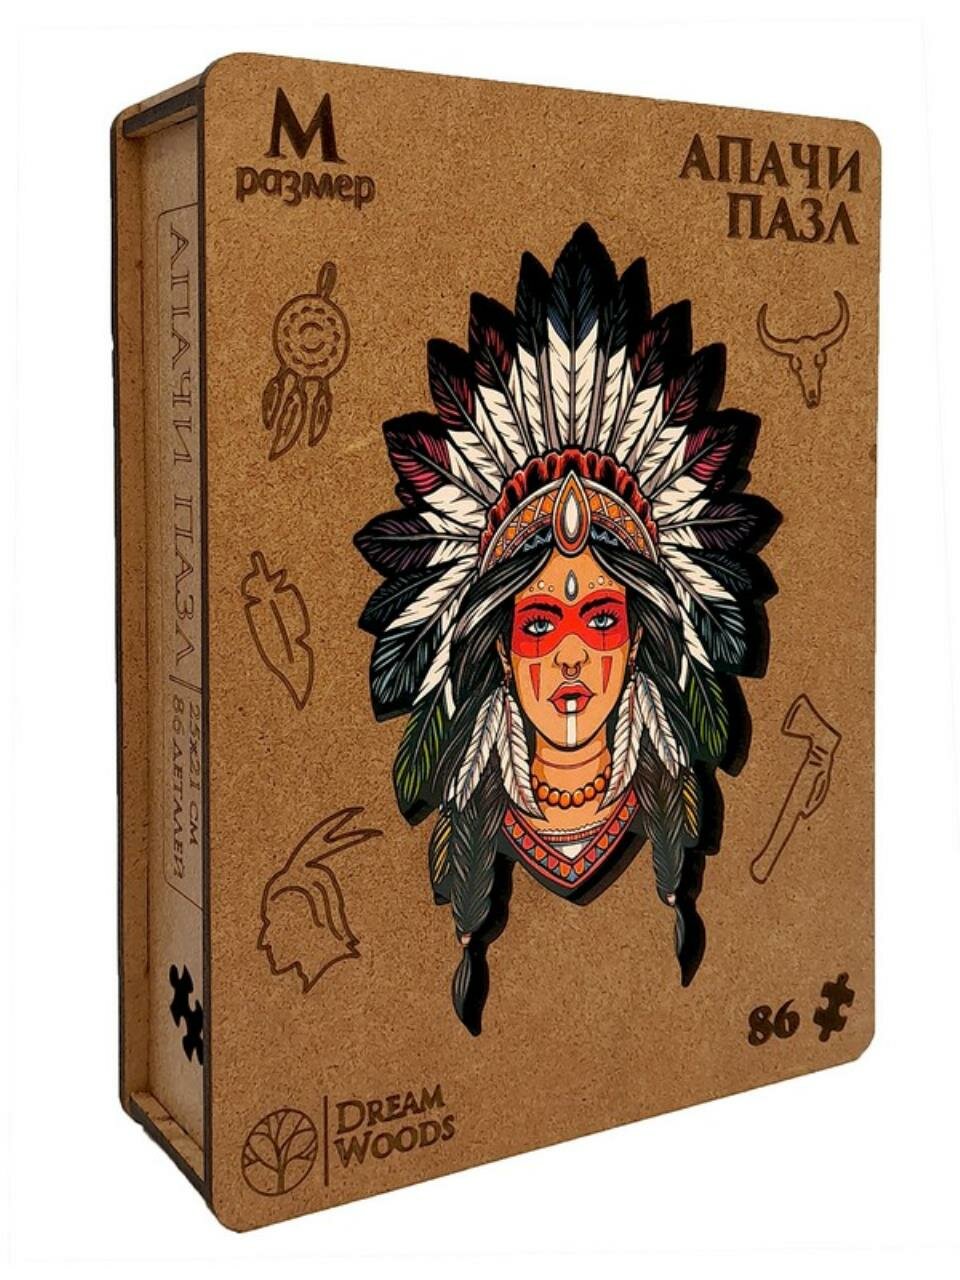 Пазл фигурный "Апачи", в к 19x14,5x4,5 см